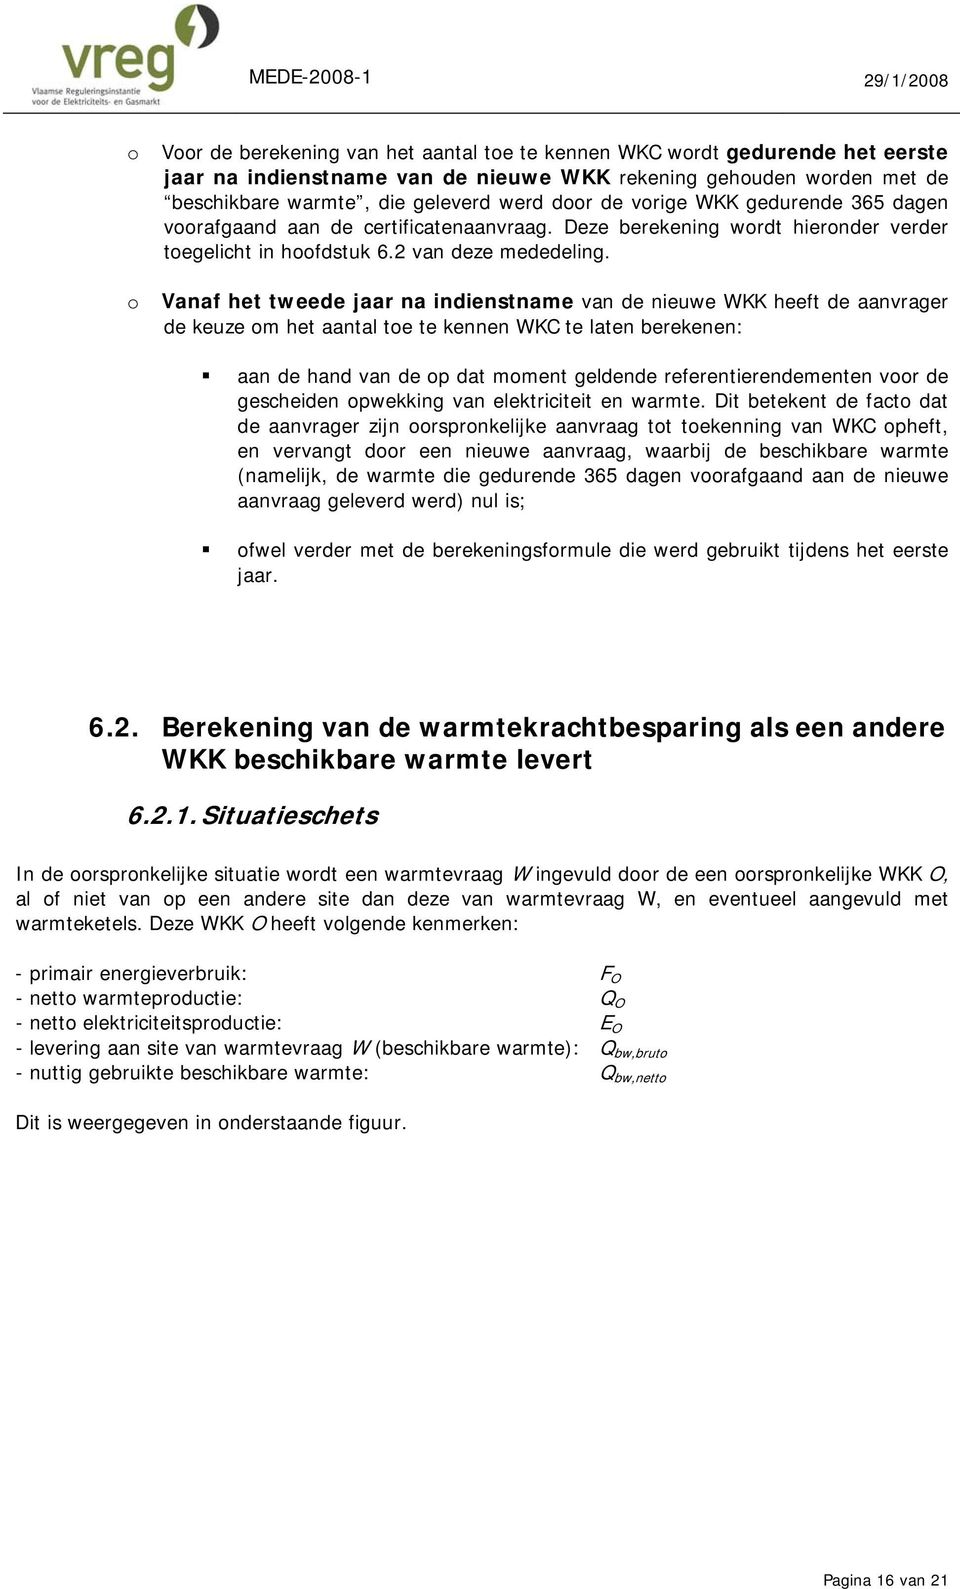 Vanaf het tweede jaar na indienstname van de nieuwe WKK heeft de aanvrager de keuze m het aantal te te kennen WKC te laten berekenen: aan de hand van de p dat mment geldende referentierendementen vr